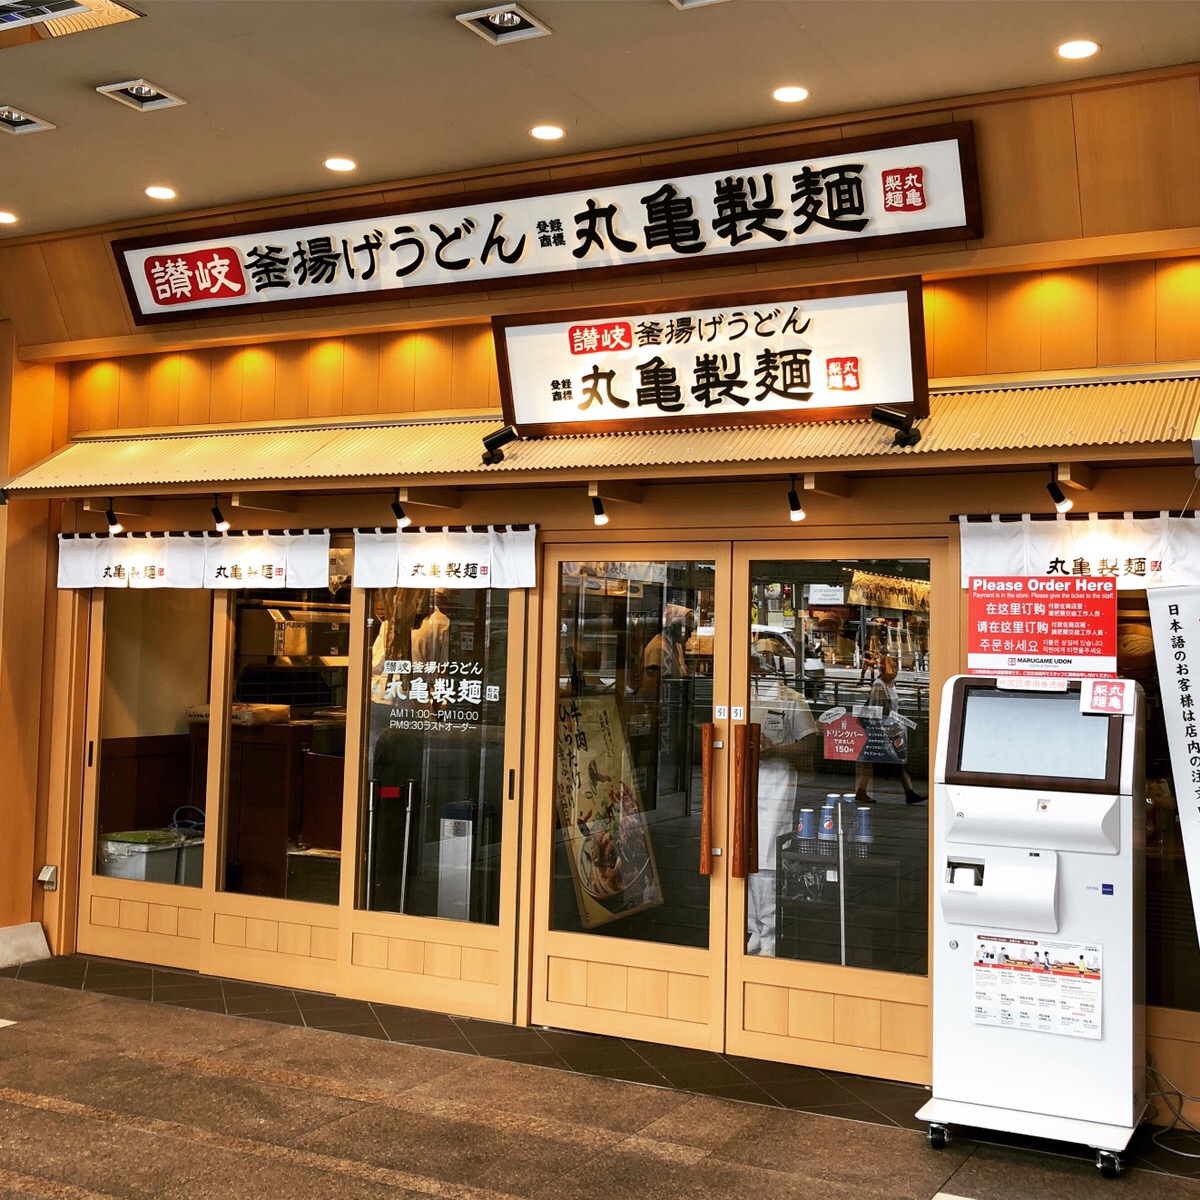 待ってた はなまるうどん独り勝ちの上野に 丸亀製麺 がオープン 仁義なきうどん戦争の幕開けか ロケットニュース24